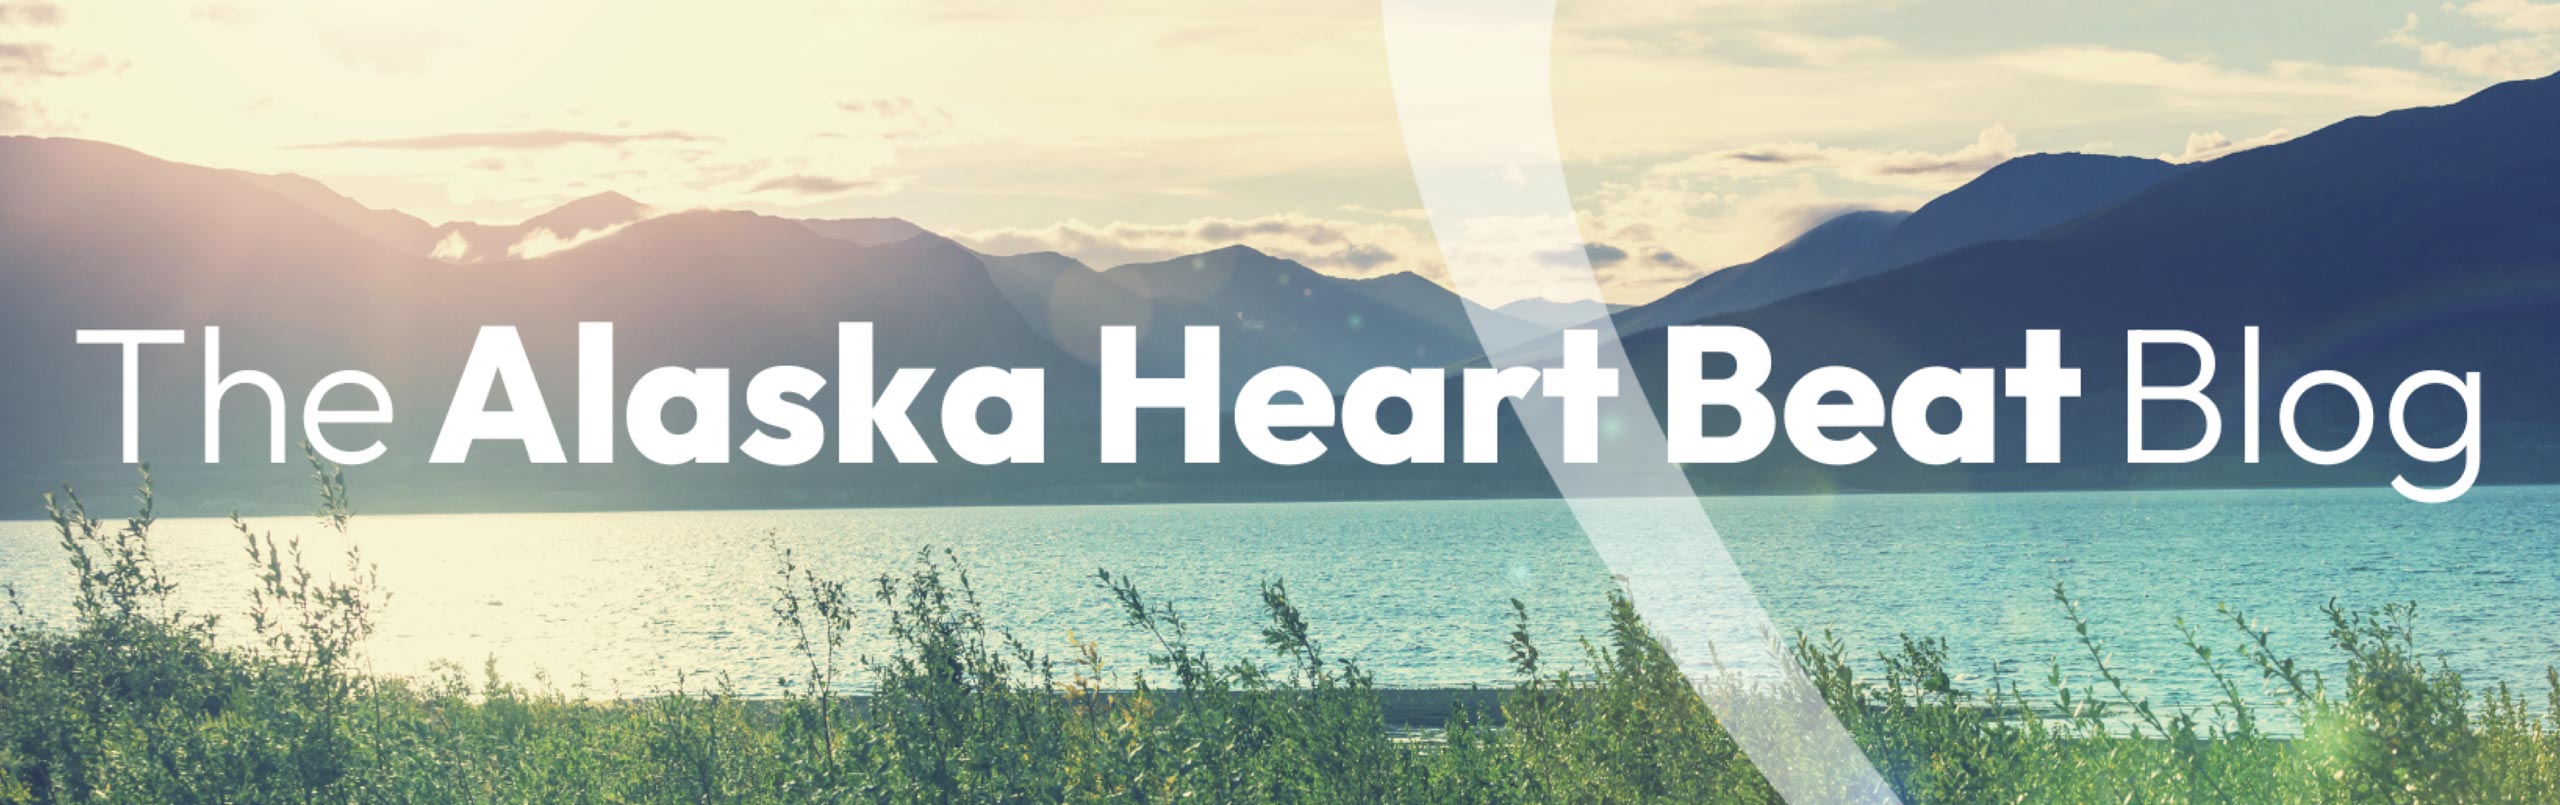 The Alaska Heart Beat Blog